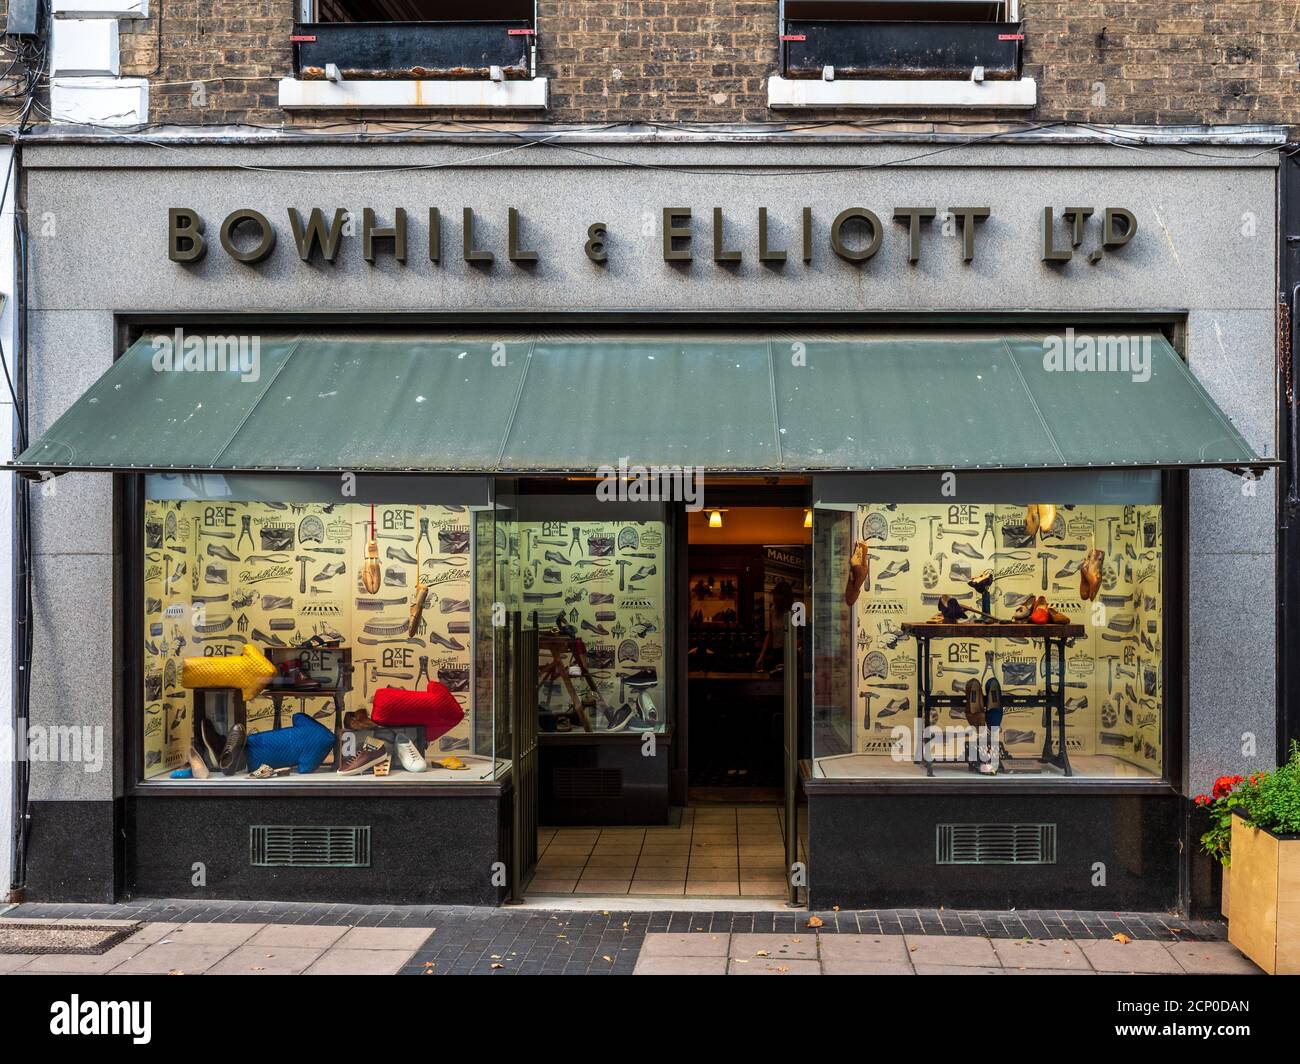 Magasin de chaussures traditionnel Norwich UK - Bowhill & Elliott Ltd - formé en 1874 le magasin a une petite usine de fabrication de chaussures ci-dessous. Bowhill and Elliott Shoe Shop. Banque D'Images